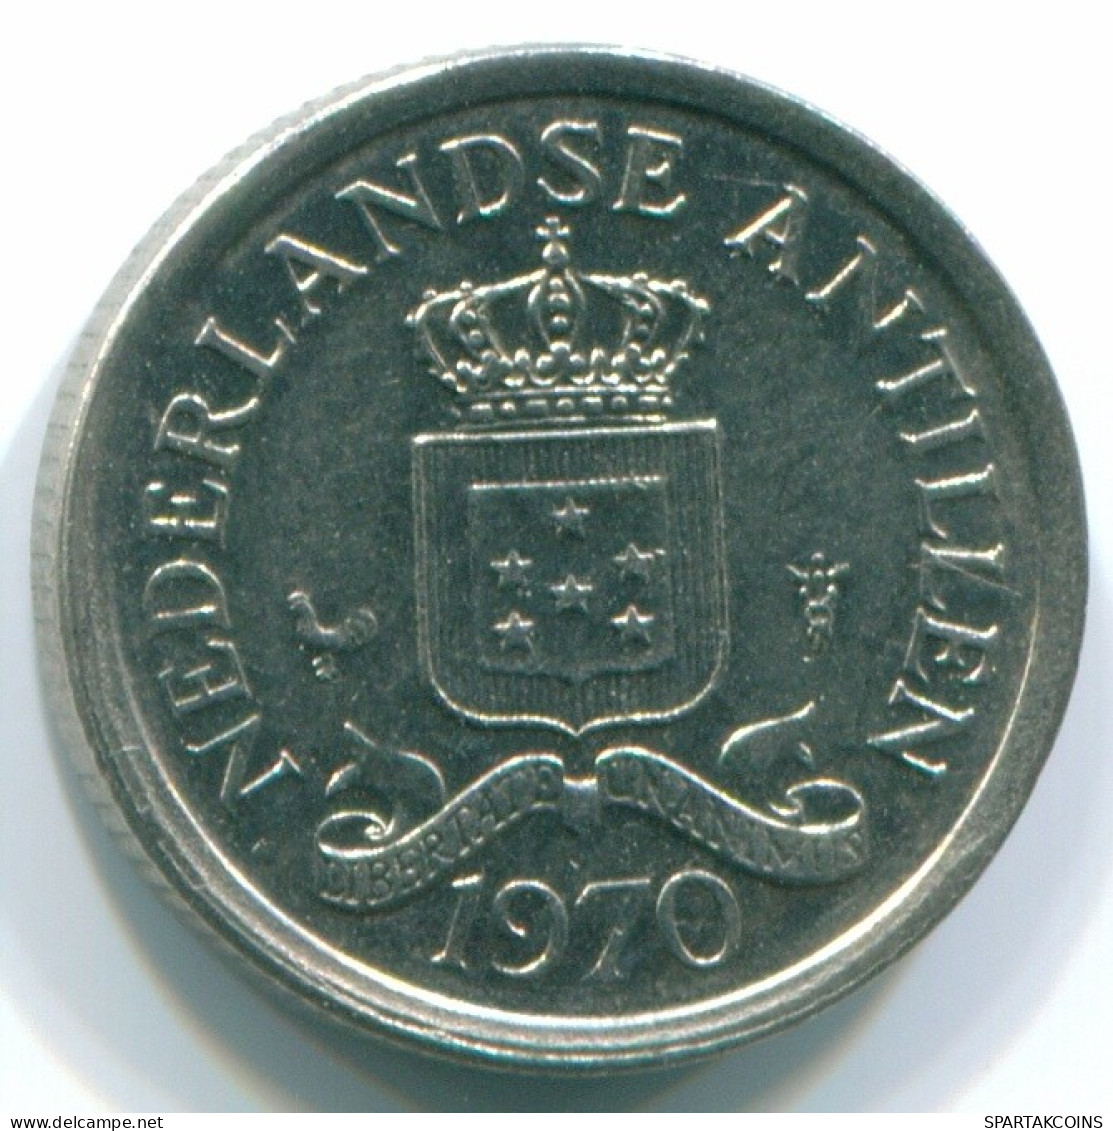 10 CENTS 1970 NIEDERLÄNDISCHE ANTILLEN Nickel Koloniale Münze #S13333.D.A - Antilles Néerlandaises